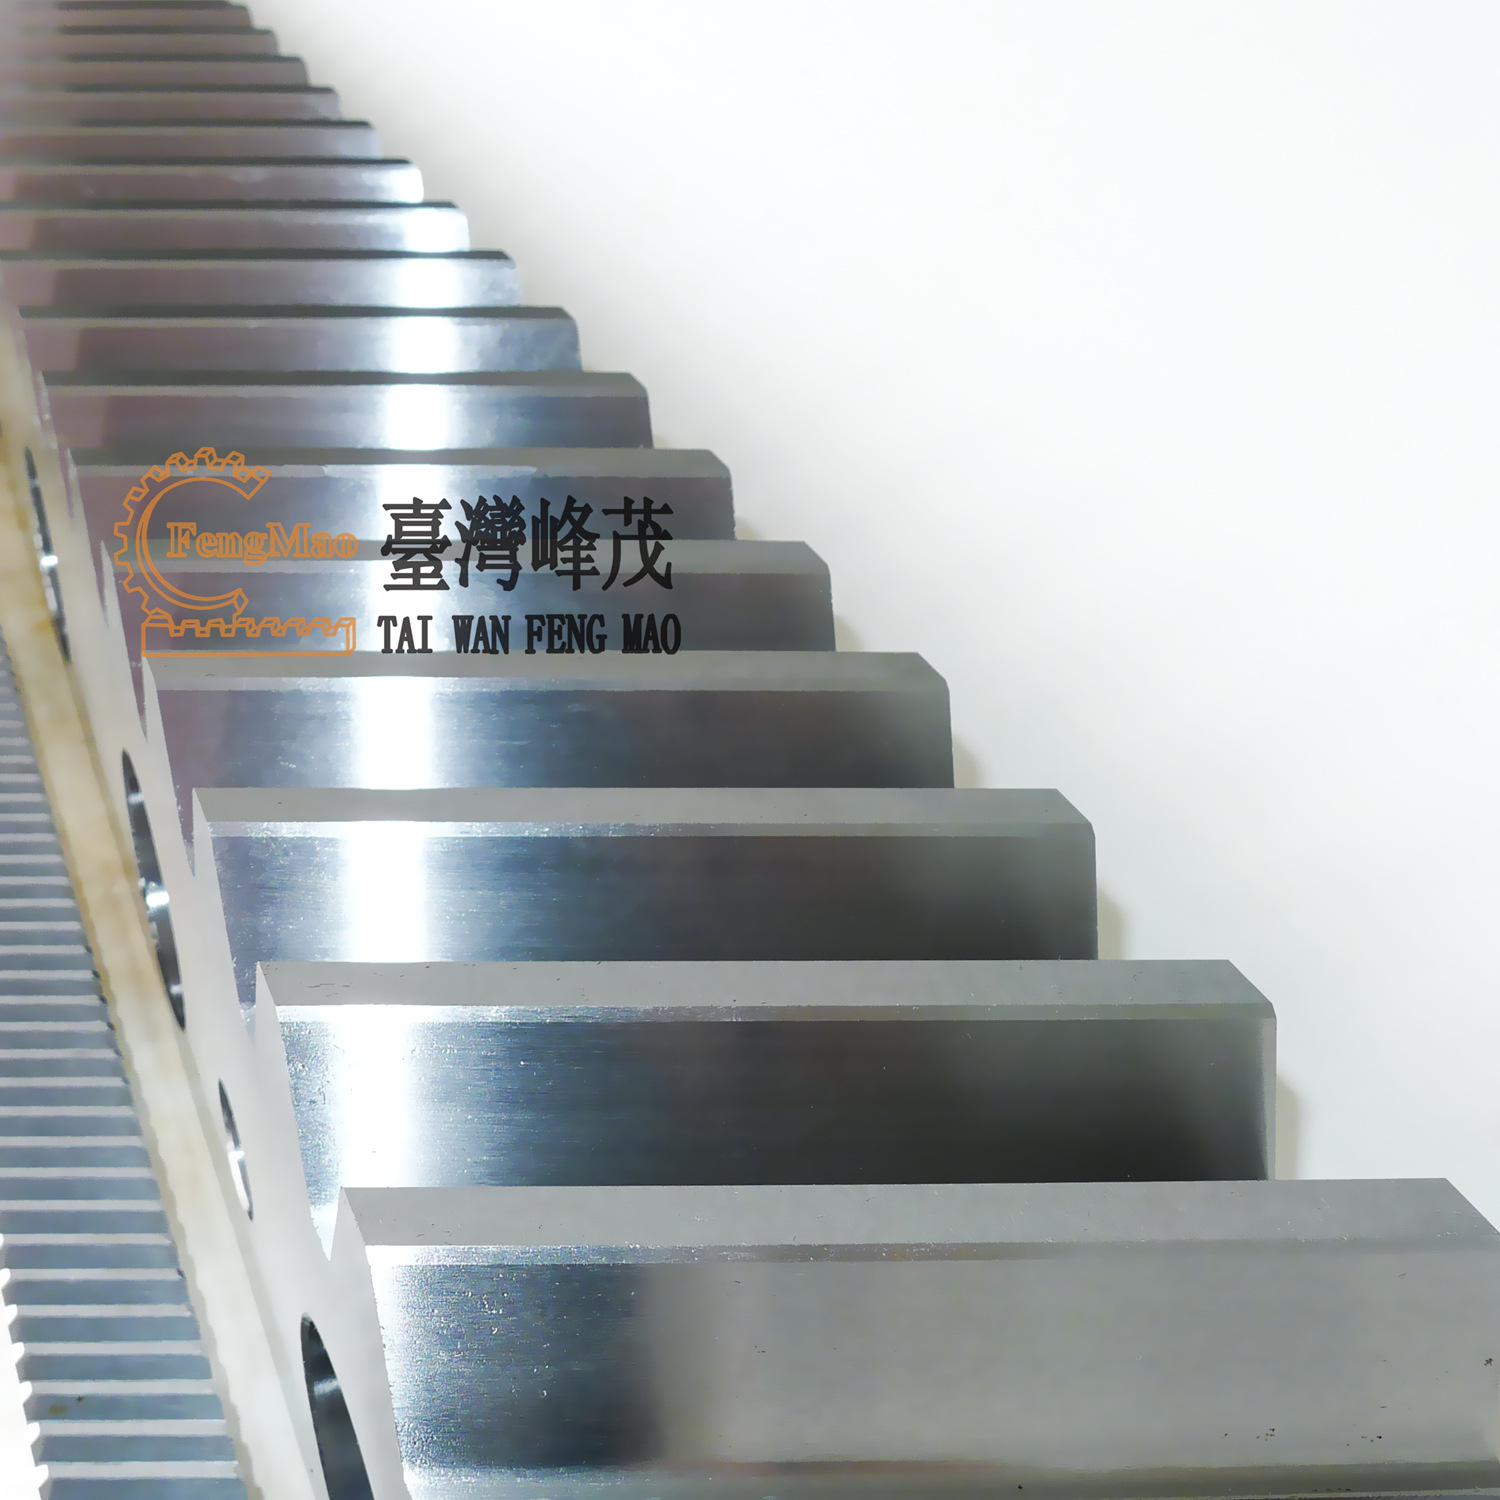 上海厂家现货供应机器人传动设备专用研磨齿轮齿条